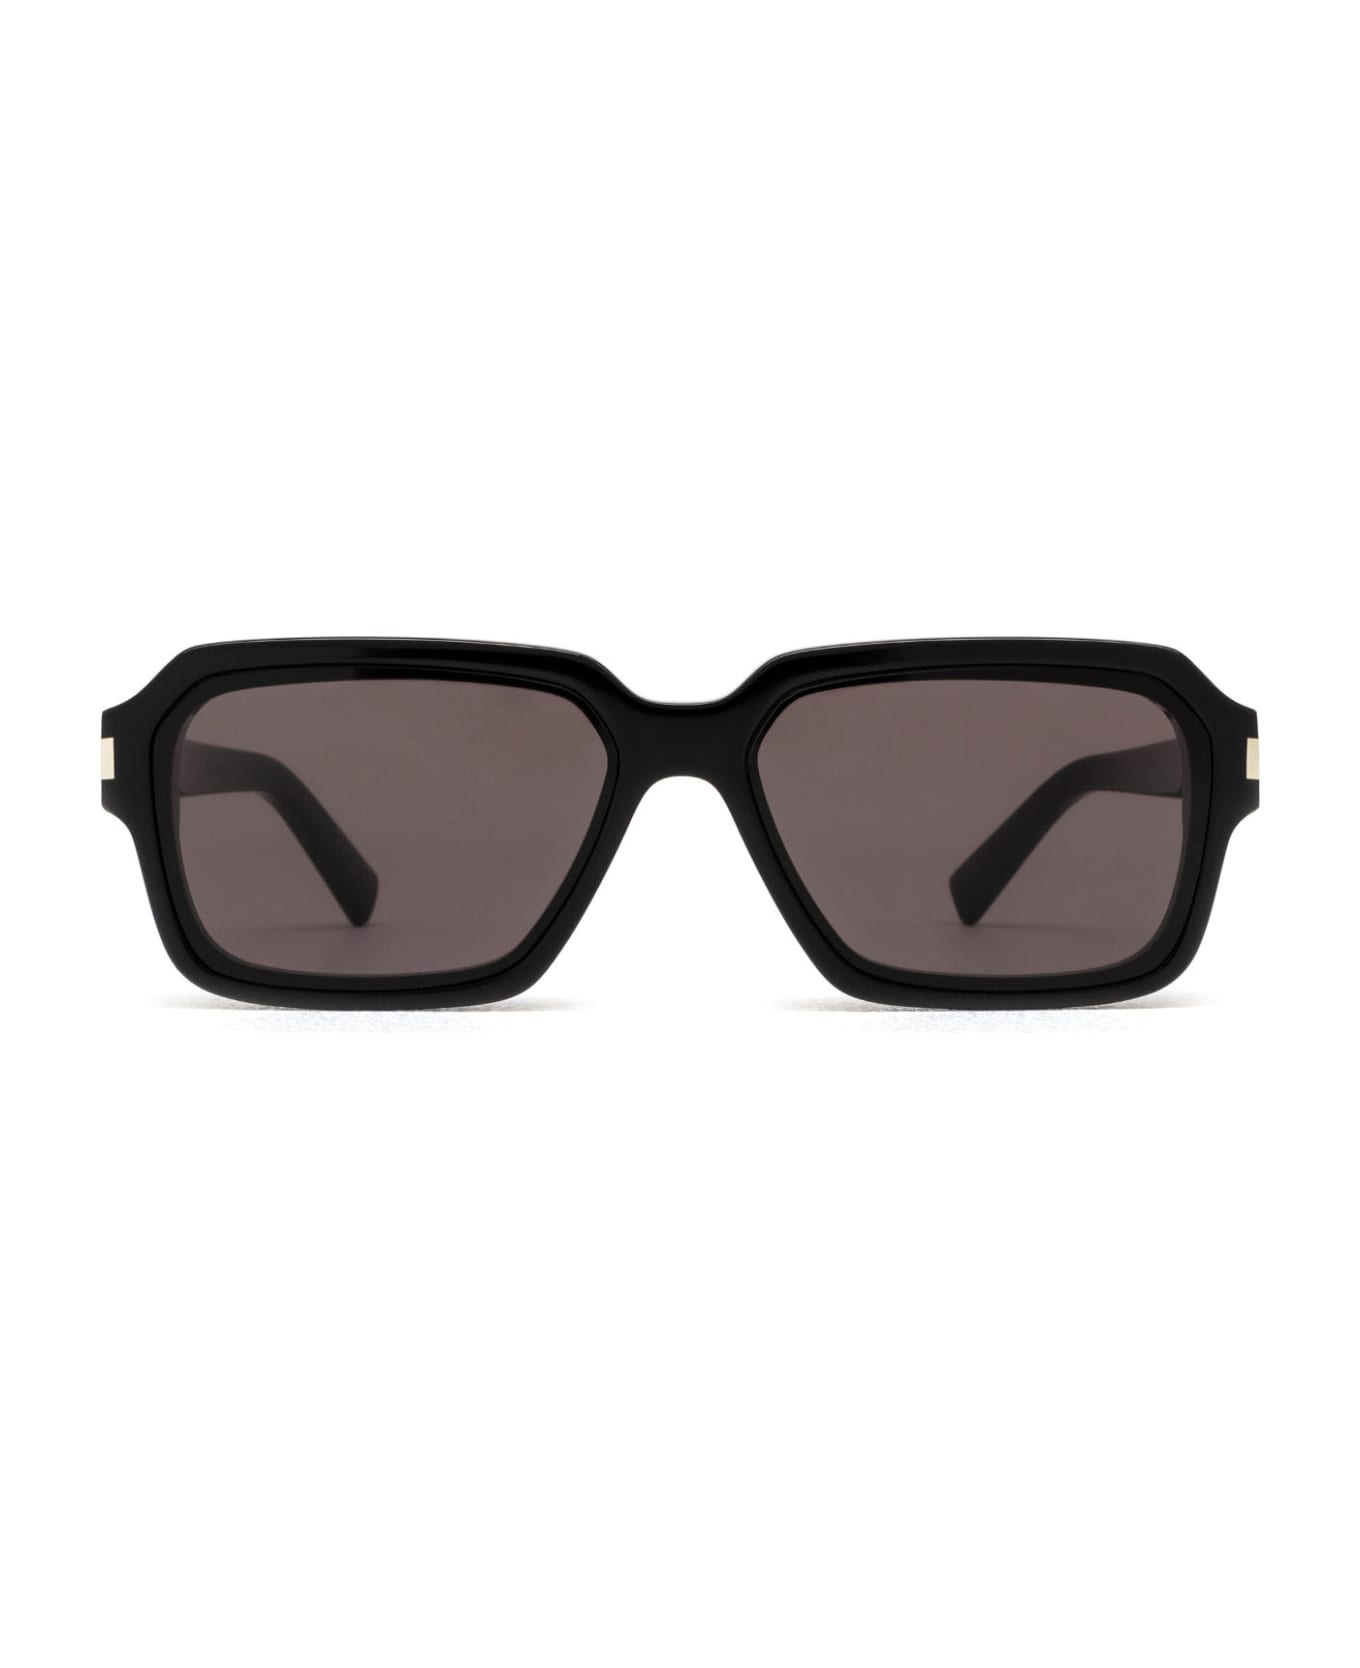 Saint Laurent Eyewear Sl 611 Black Sunglasses - Black